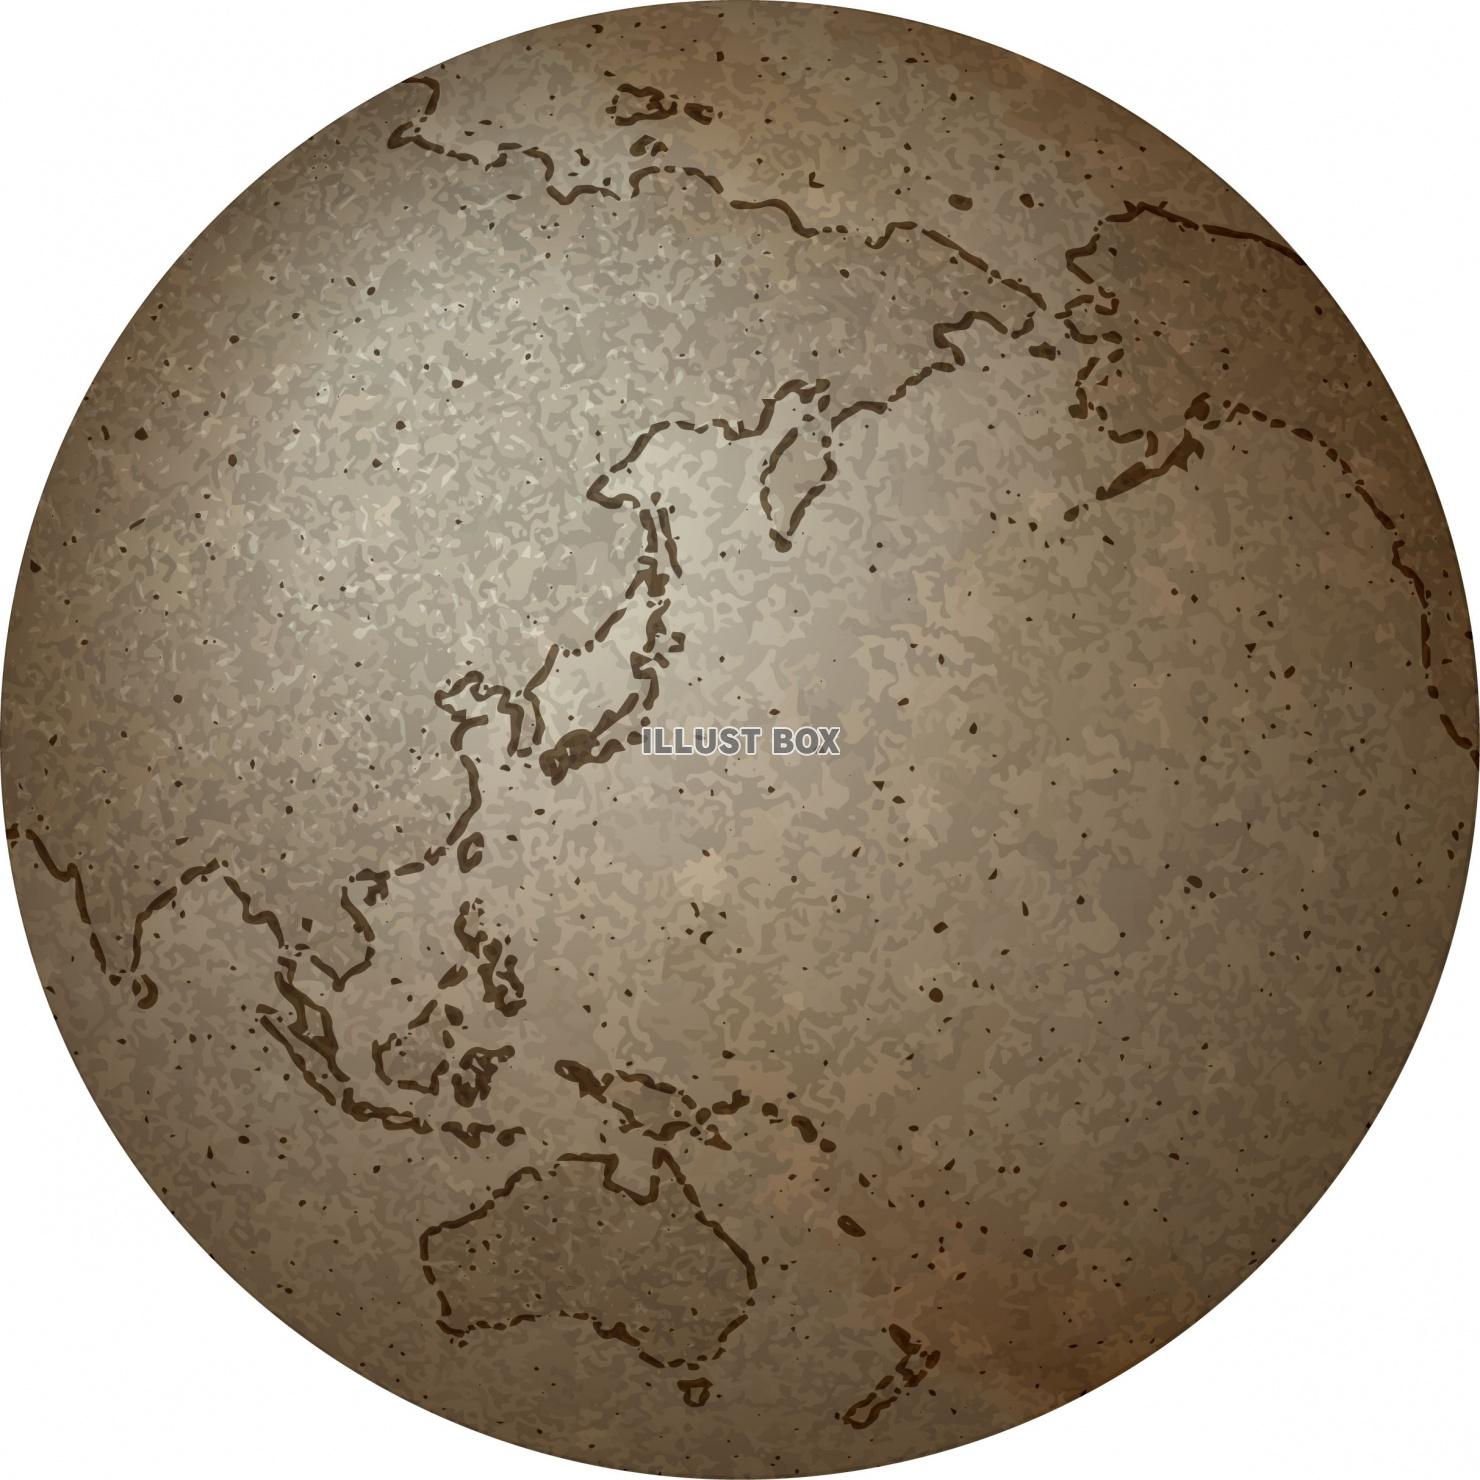 無料イラスト アンティークな地球儀のイメージ